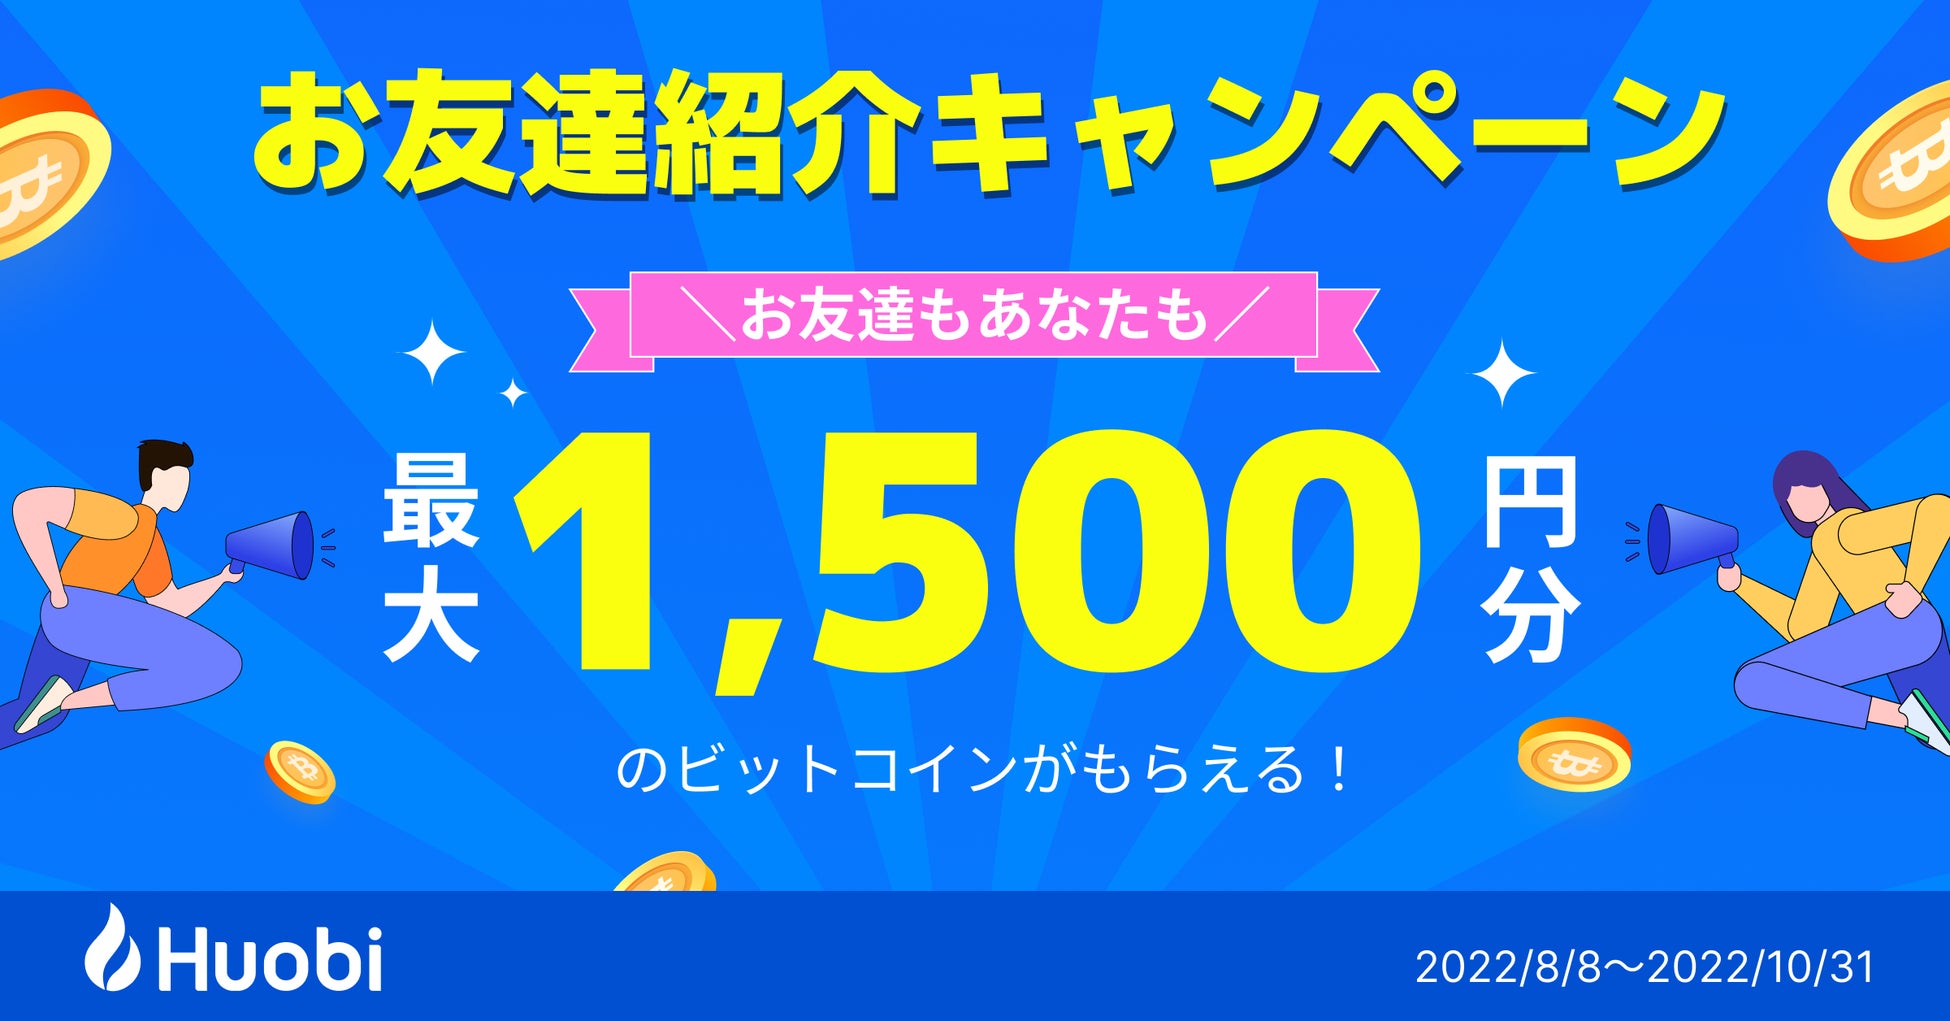 フォビジャパン、【1,500円相当のビットコインがもらえる！】お友達紹介キャンペーン を開催